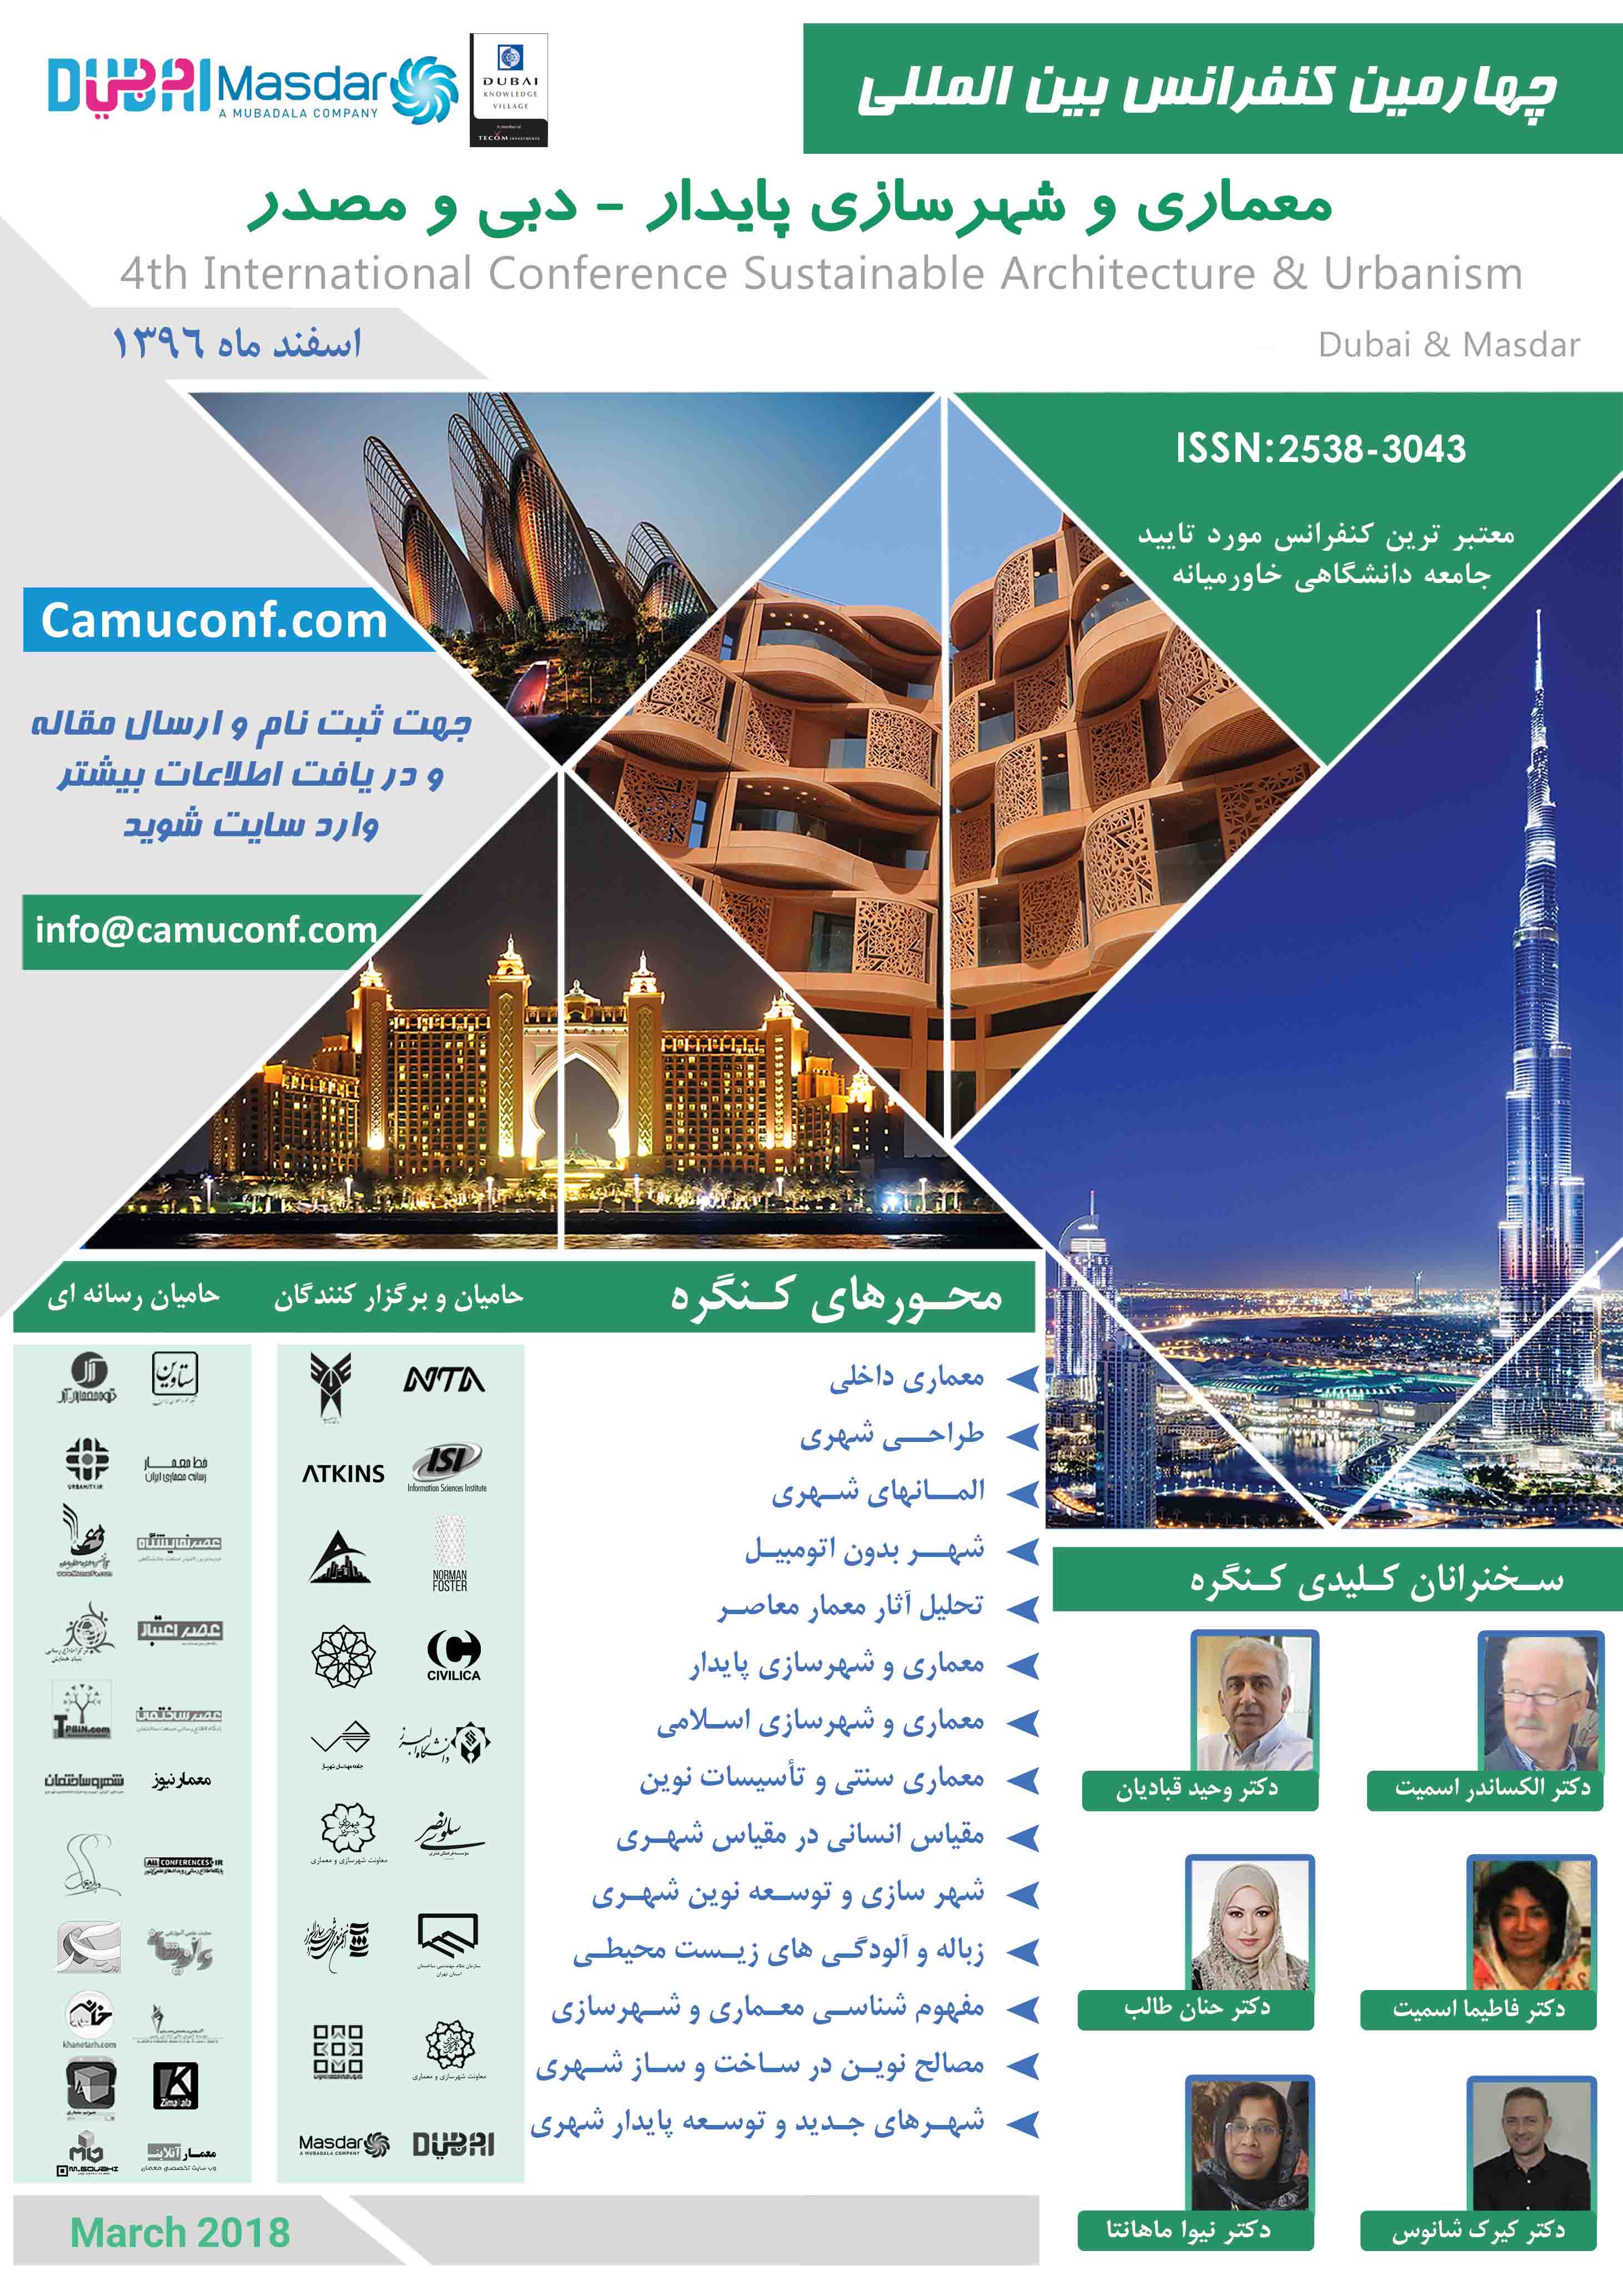 چـهـارمین کنفرانس بین المللی معماری و شهرسازی پایدار - دبی و مصدر